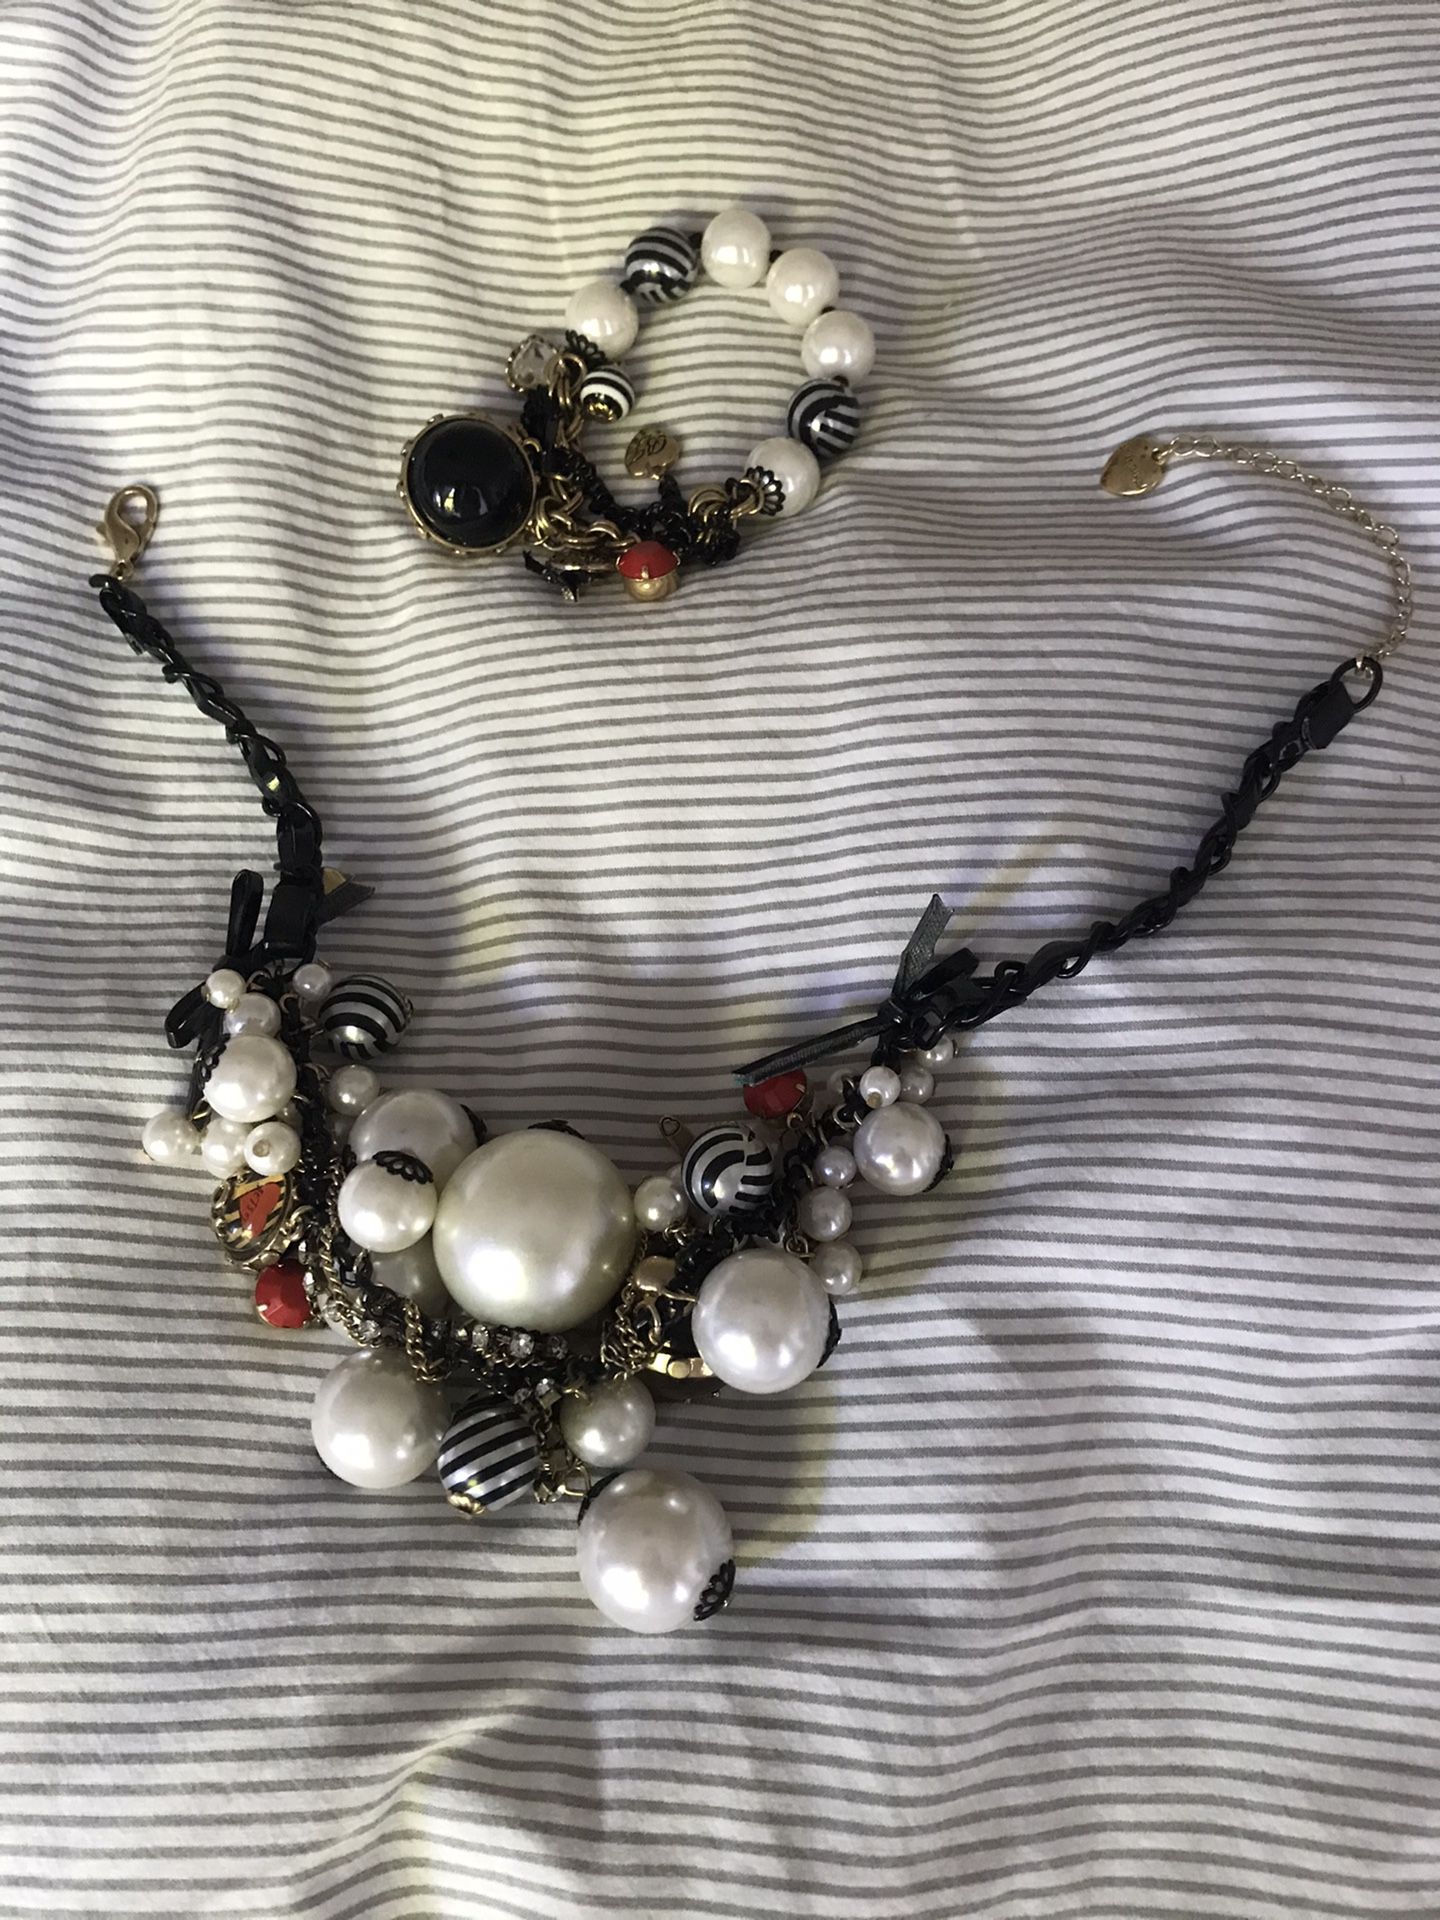 Betsey Johnson necklace and bracelet